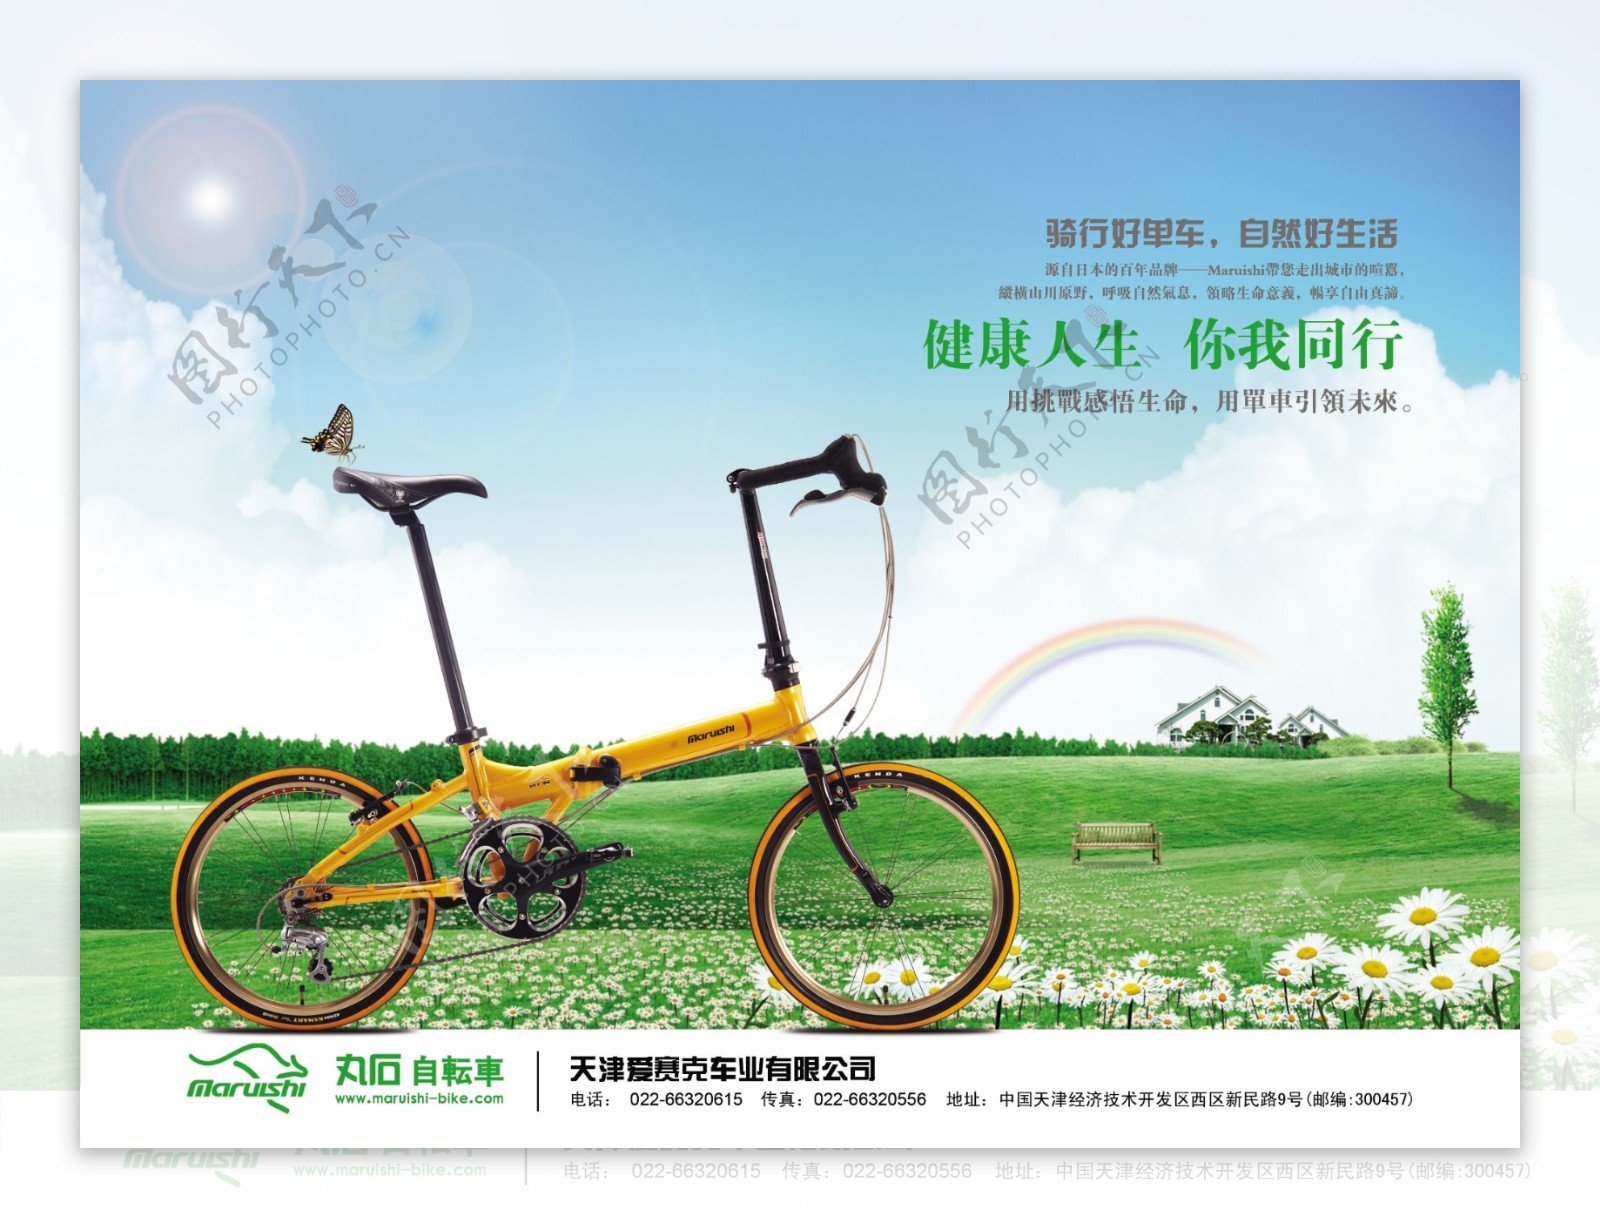 自行车展示广告PSD素材